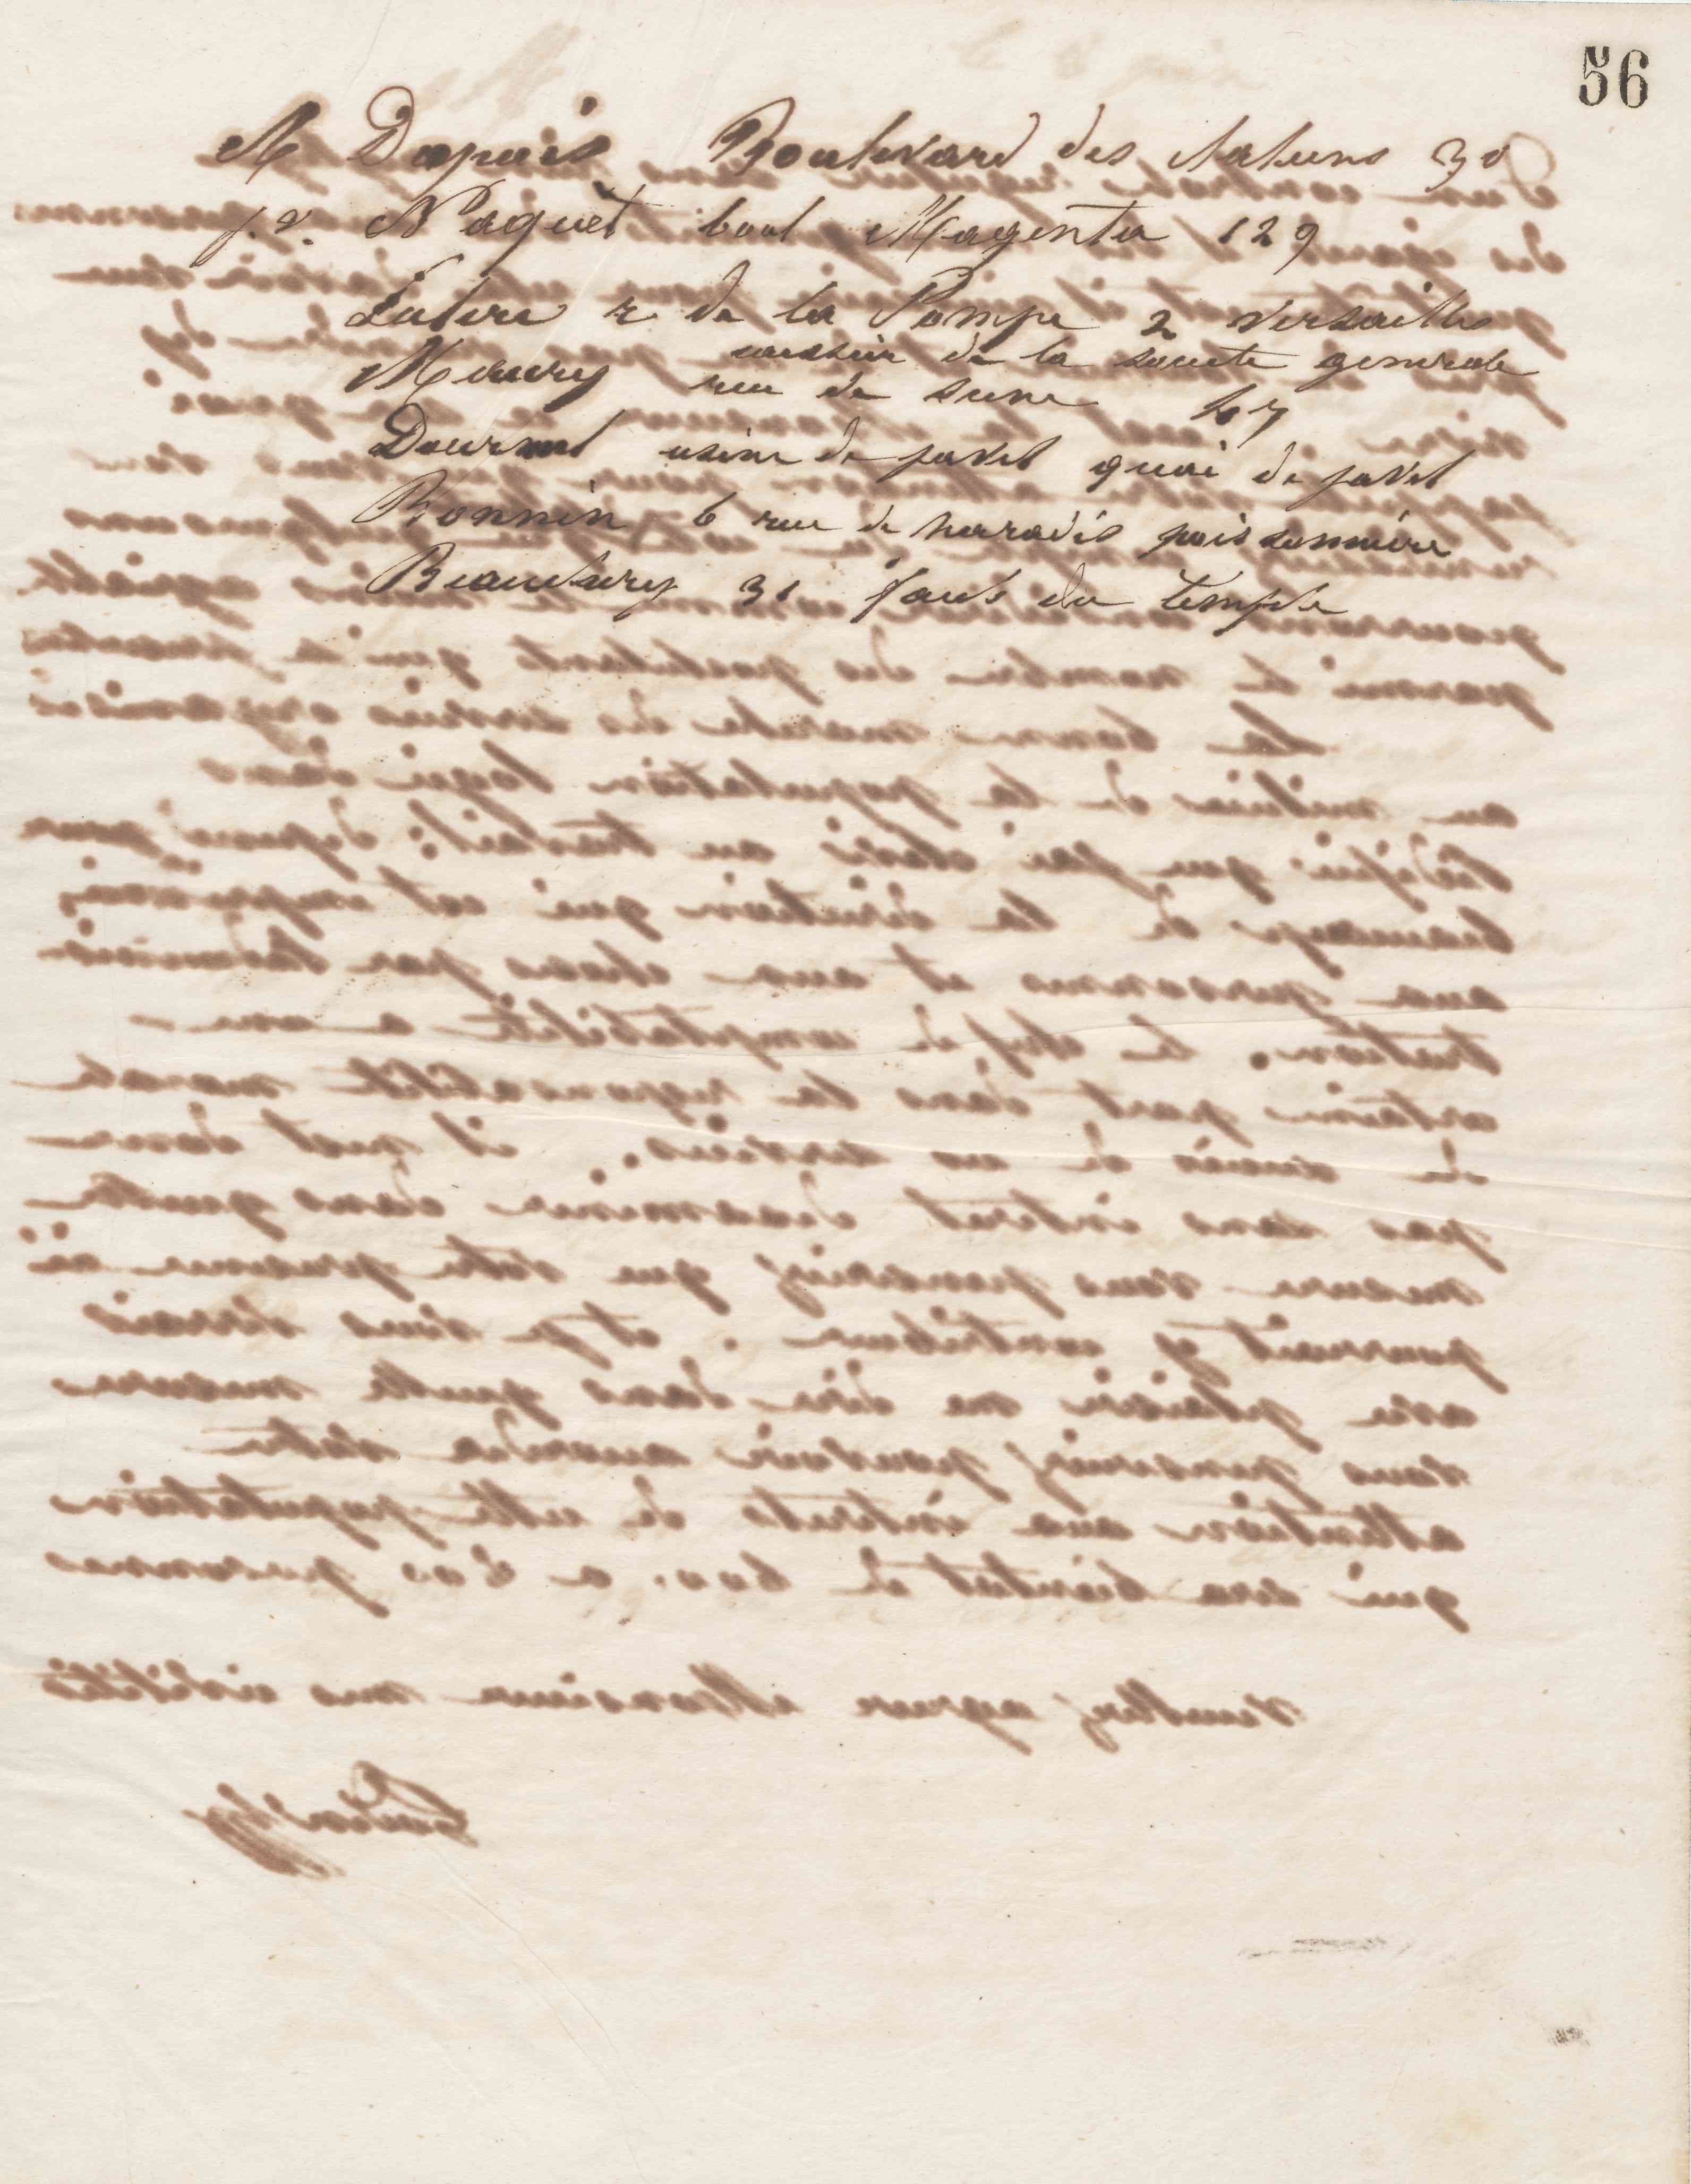 Jean-Baptiste André Godin à messieurs Dupuis, Naquet, Luterc (?), A. Maury, Dourmel, Bonnin et Beauchéry, 7 juin 1865